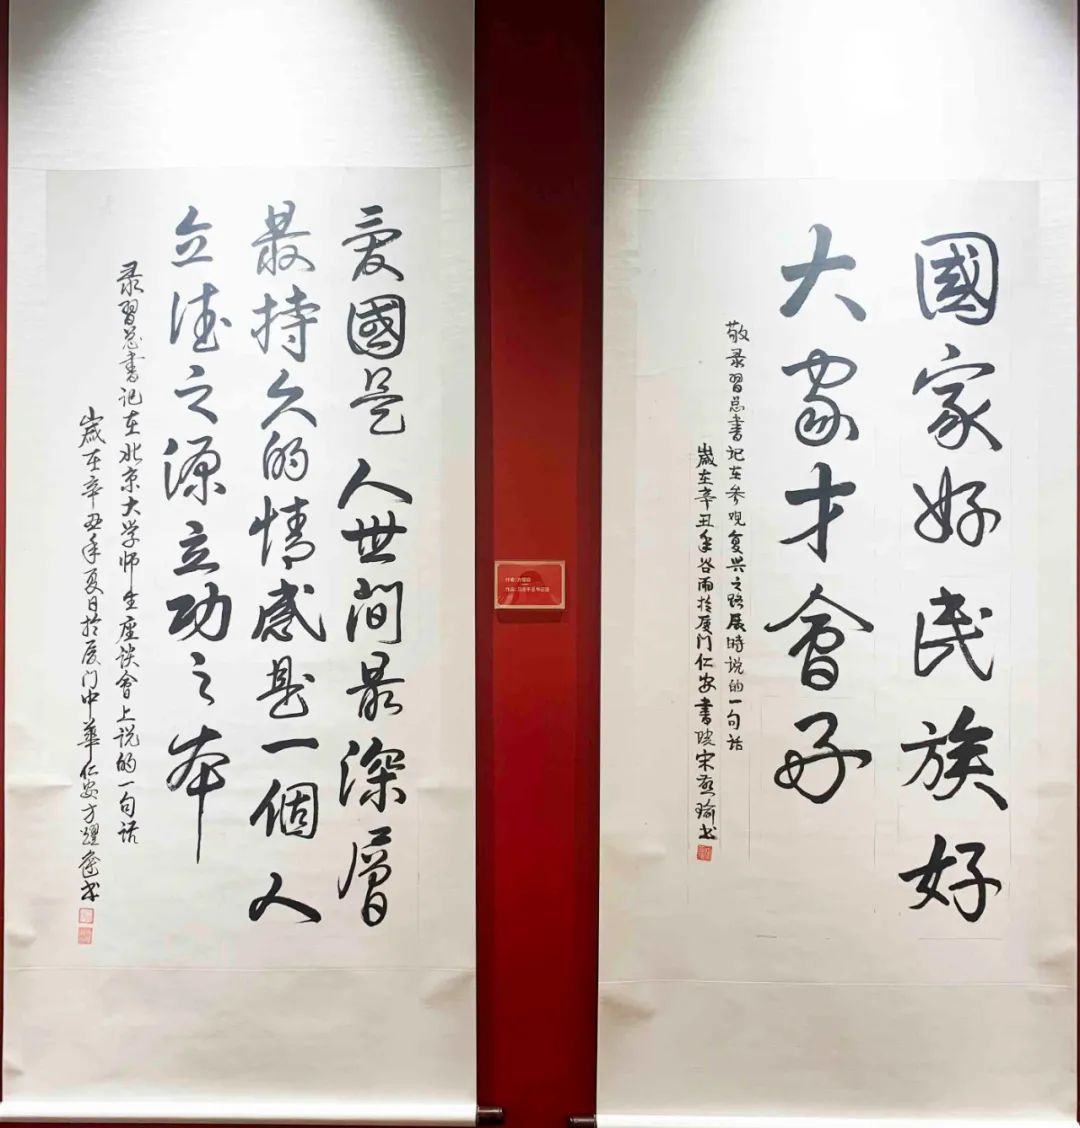 “礼赞百年·同心向党”——厦门市佛教界庆祝中国共产党成立100周年专题展之“厦门市佛教界书画作品展”